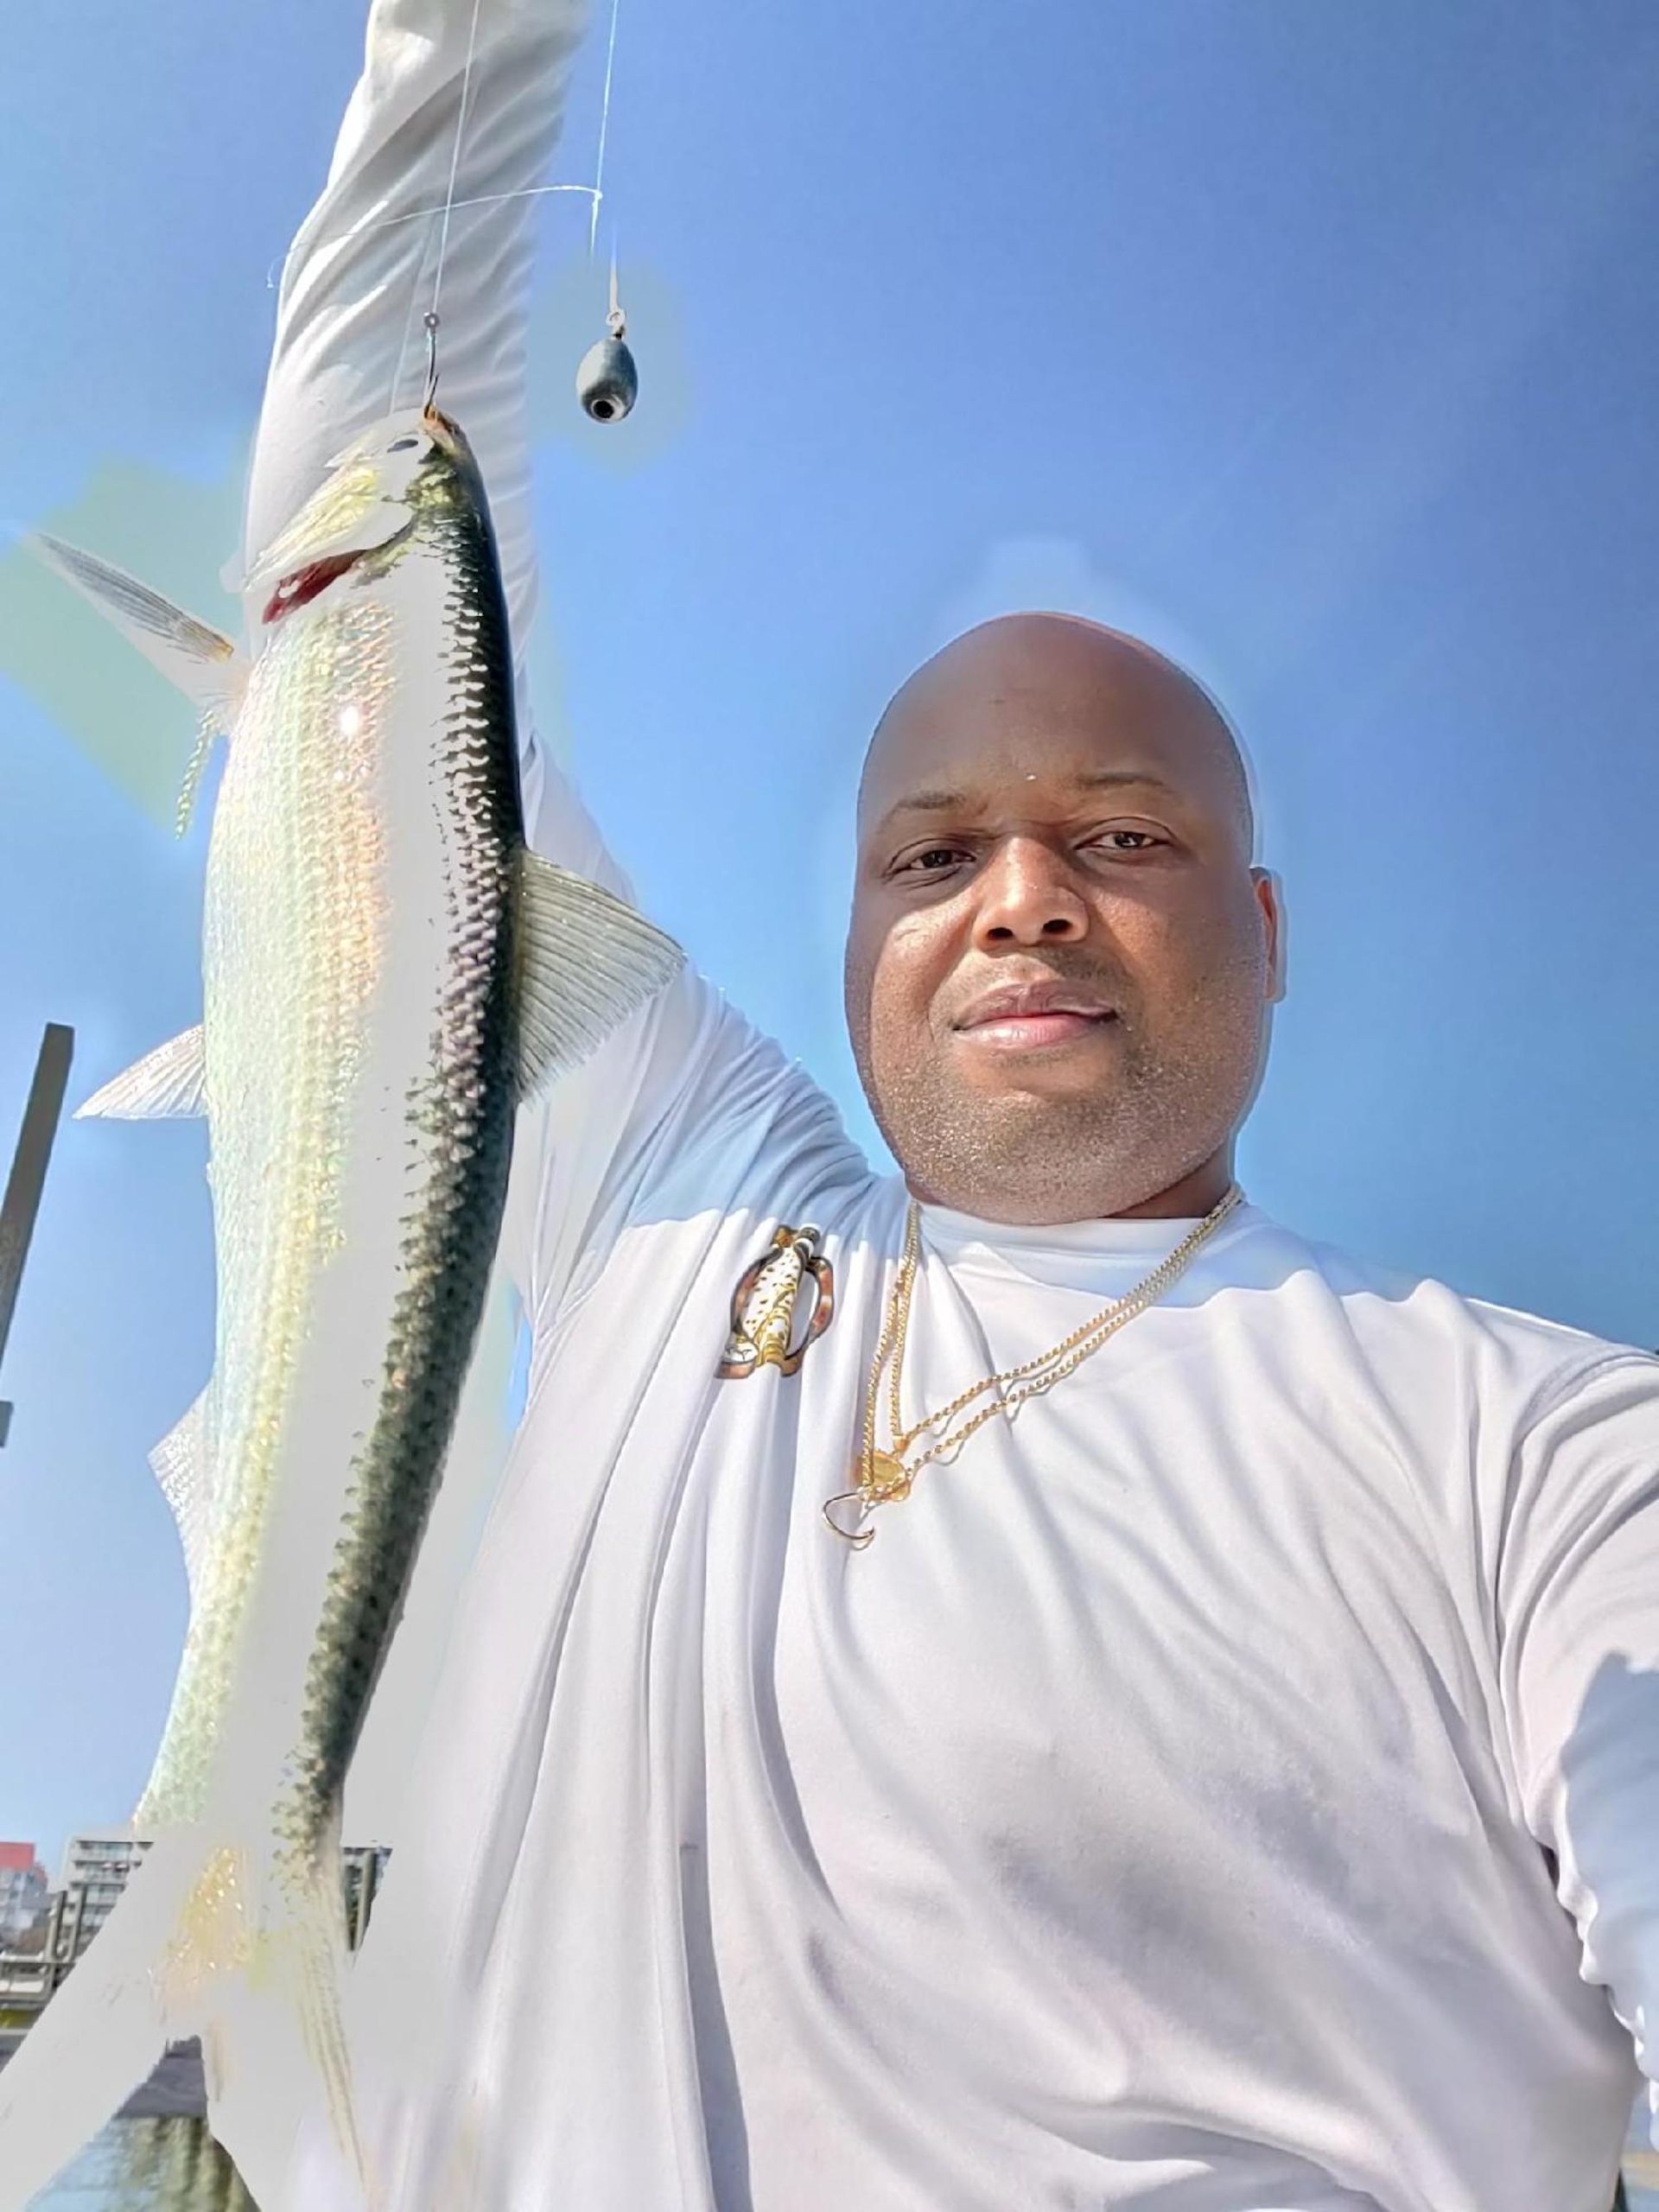 Miami Tarpon Fishing